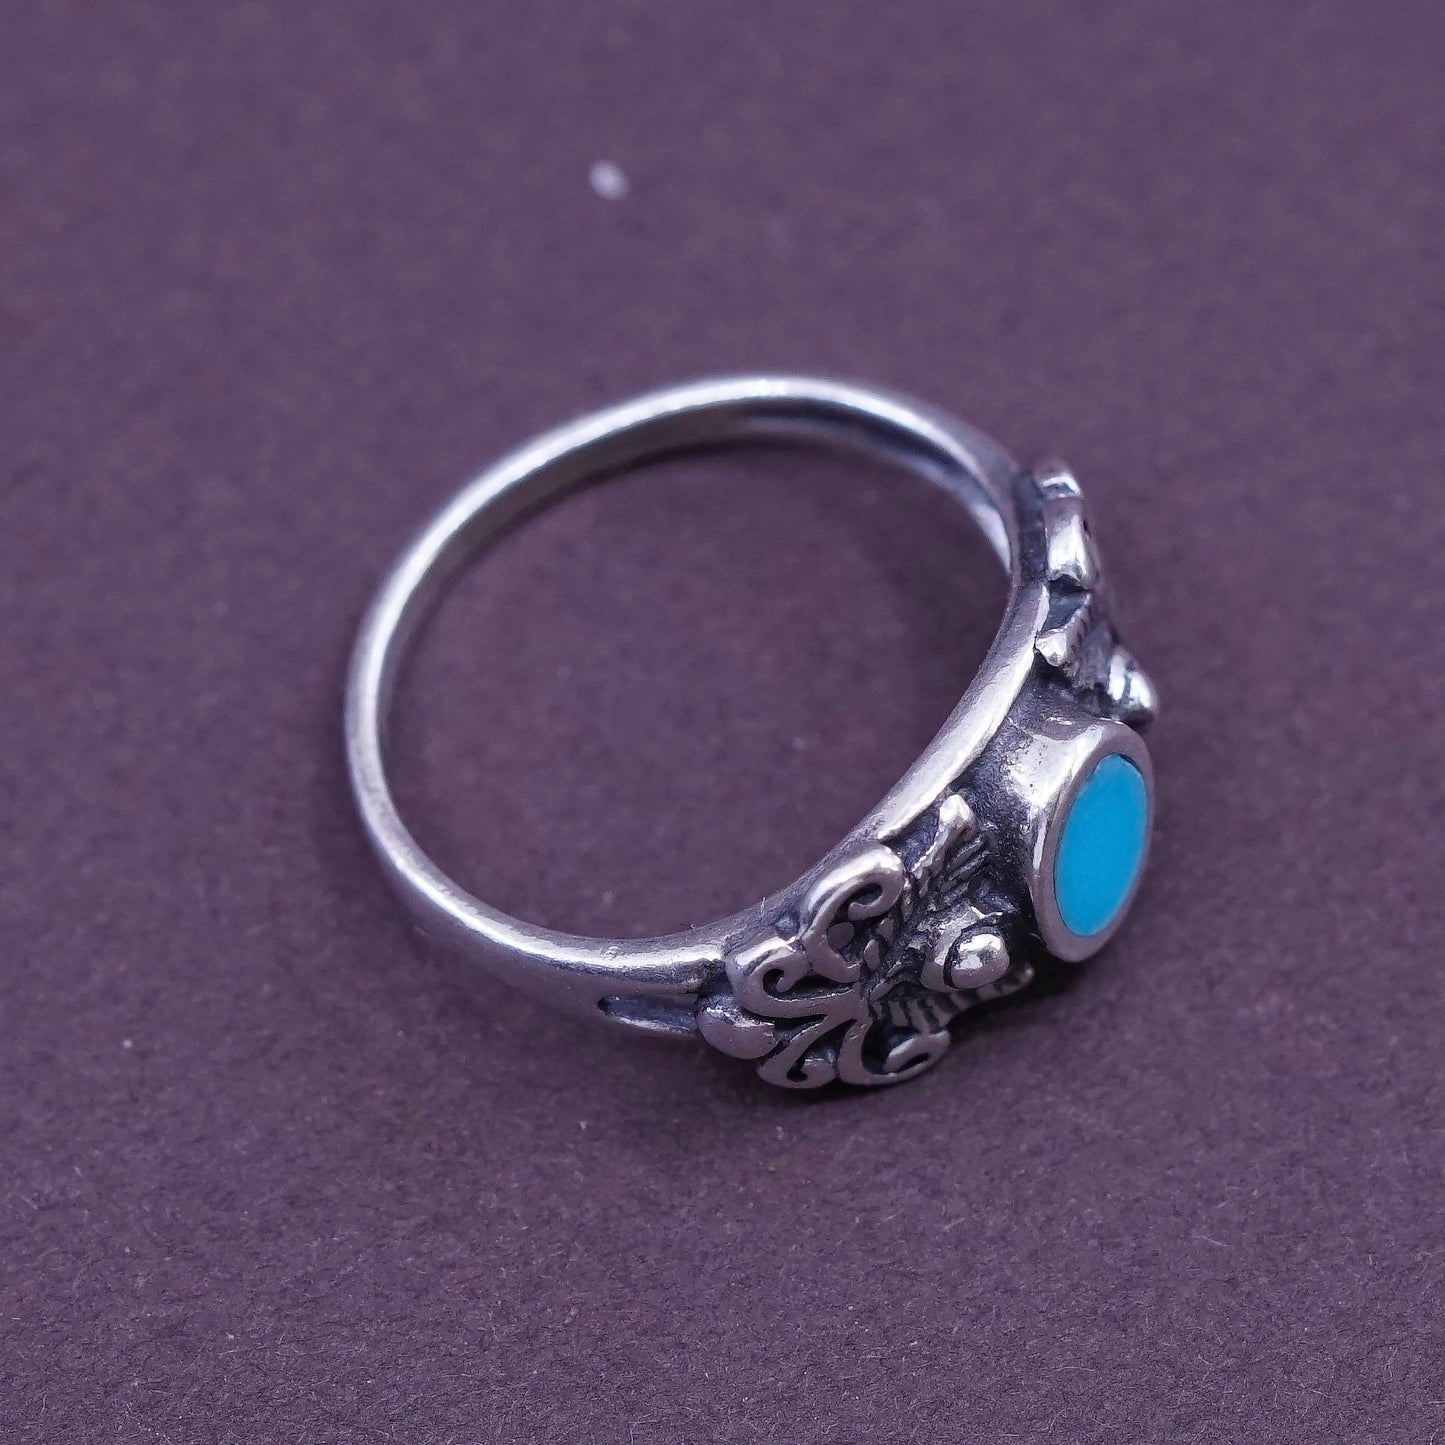 Size 1.5, vtg Sterling 925 silver handmade ring w/ turquoise N filigree flower